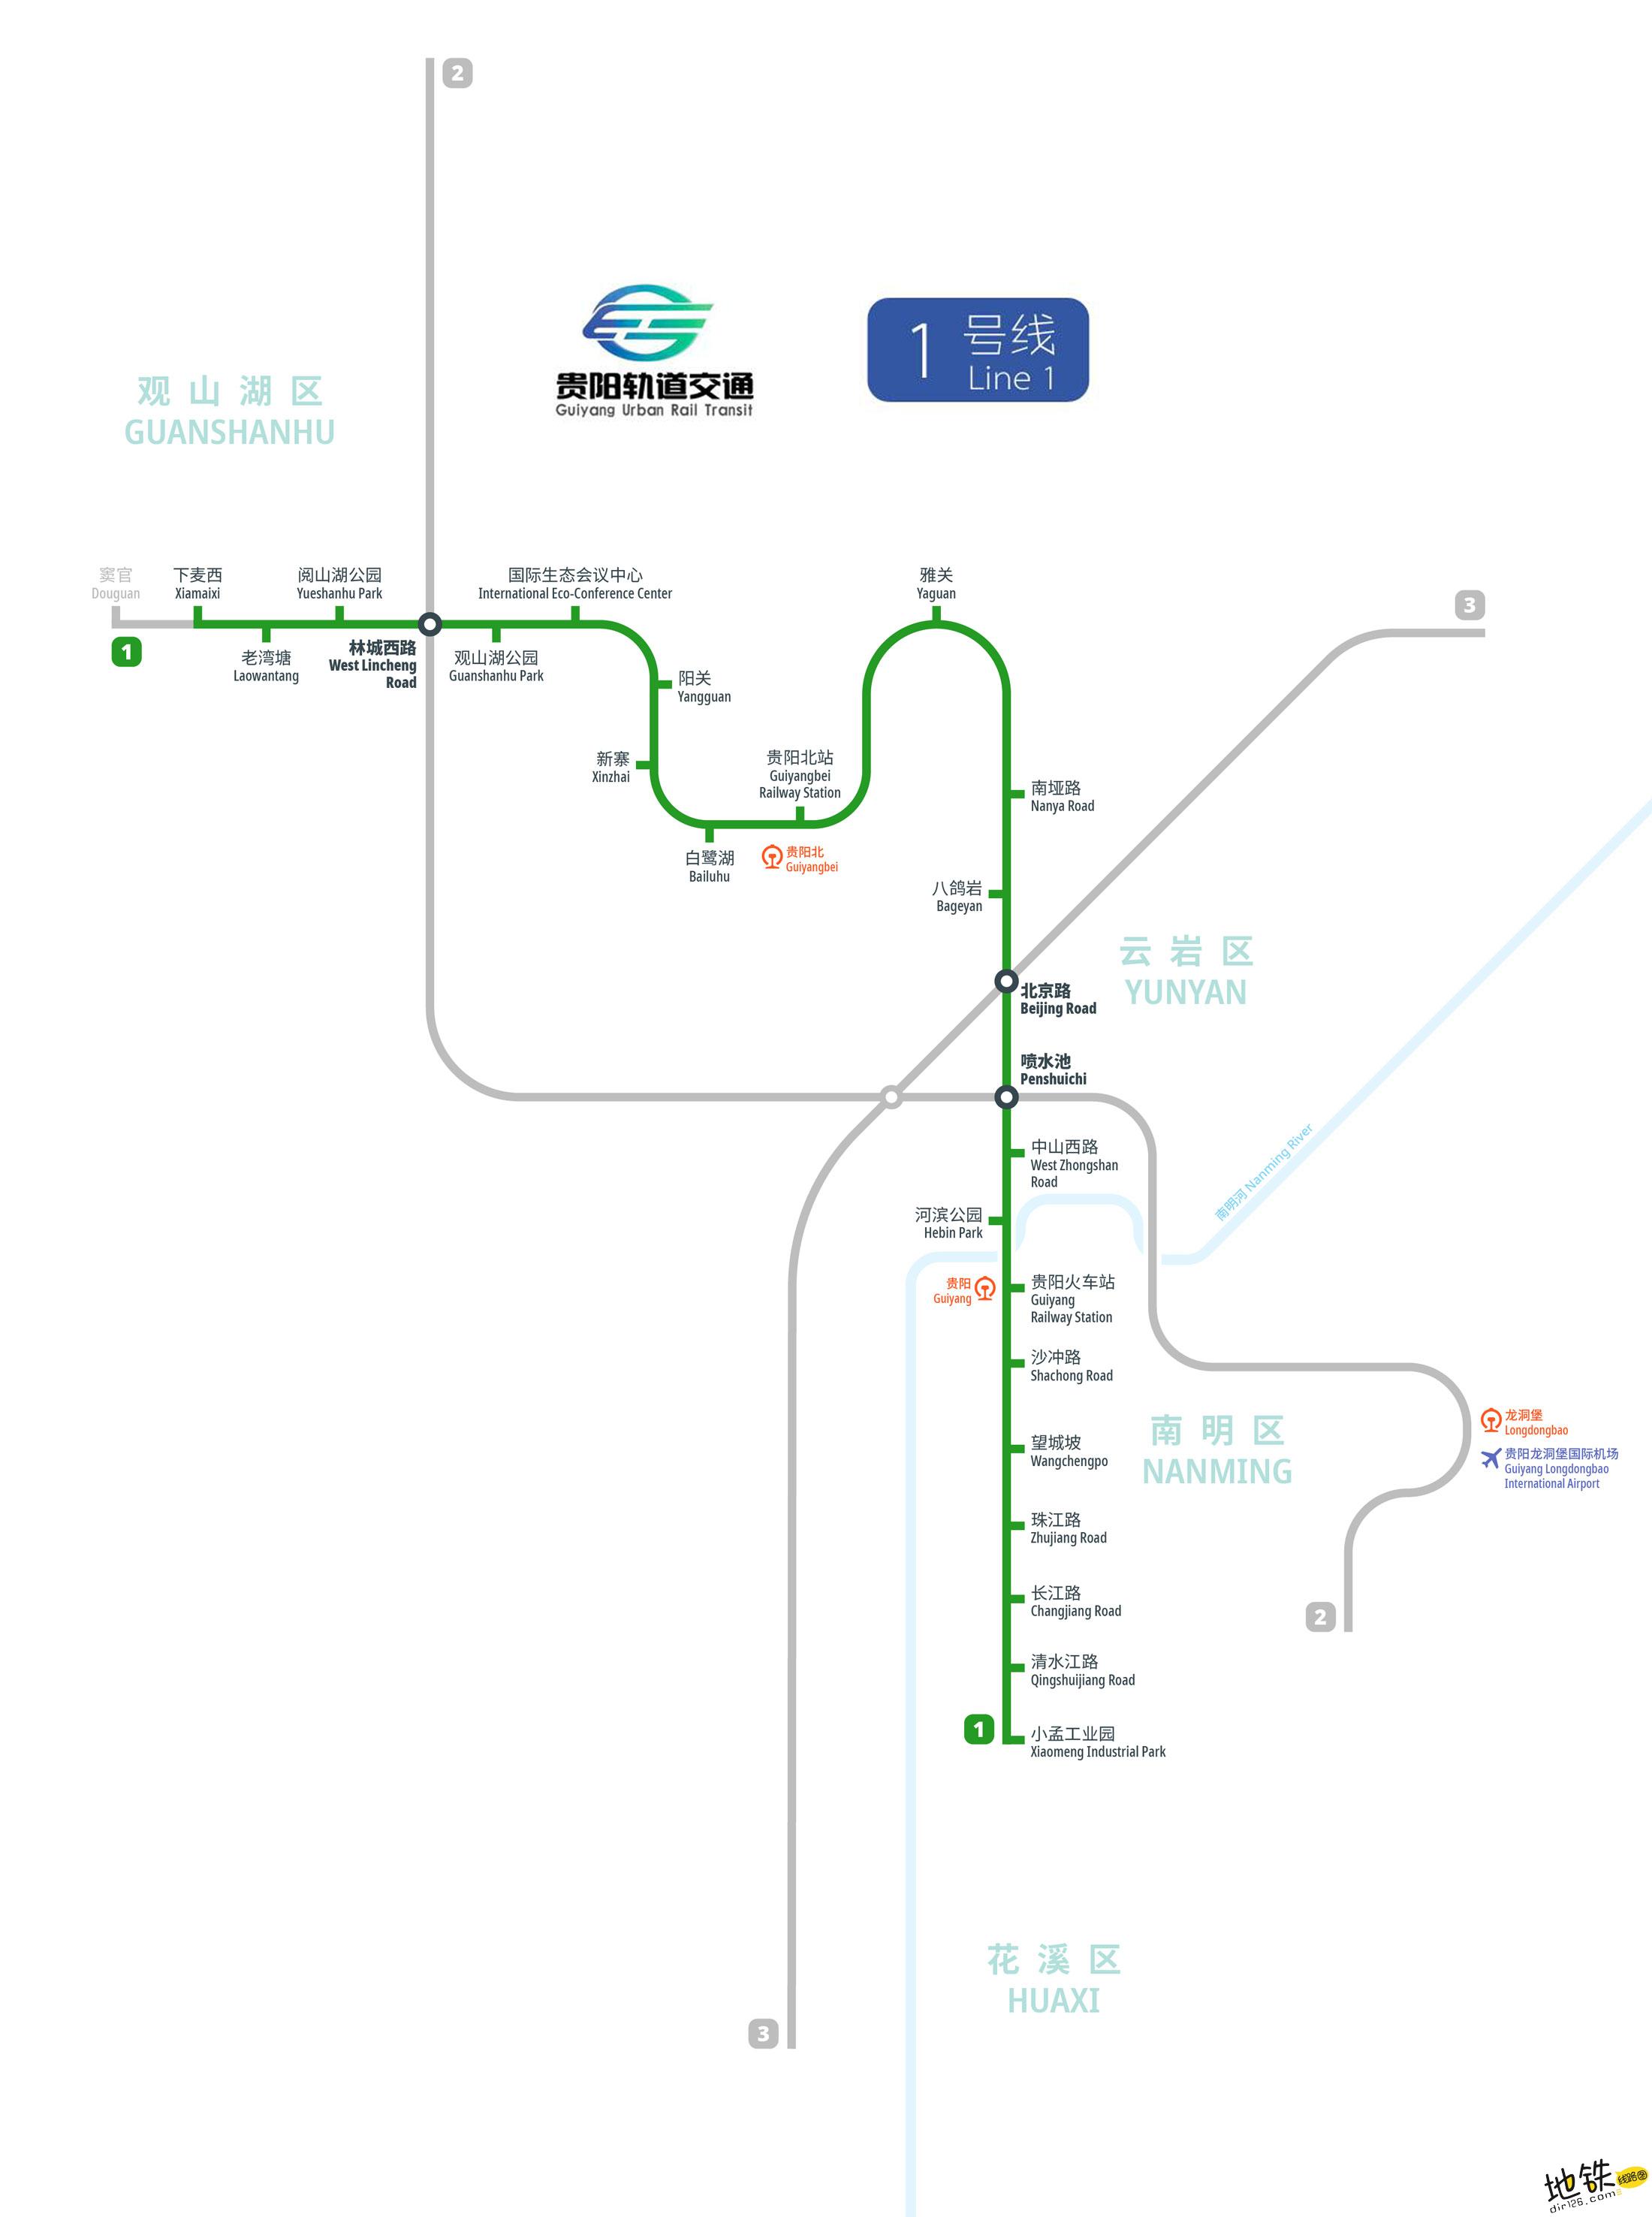 【轨道图RailMap】合肥轨道交通线网图2025年/当前 - 知乎